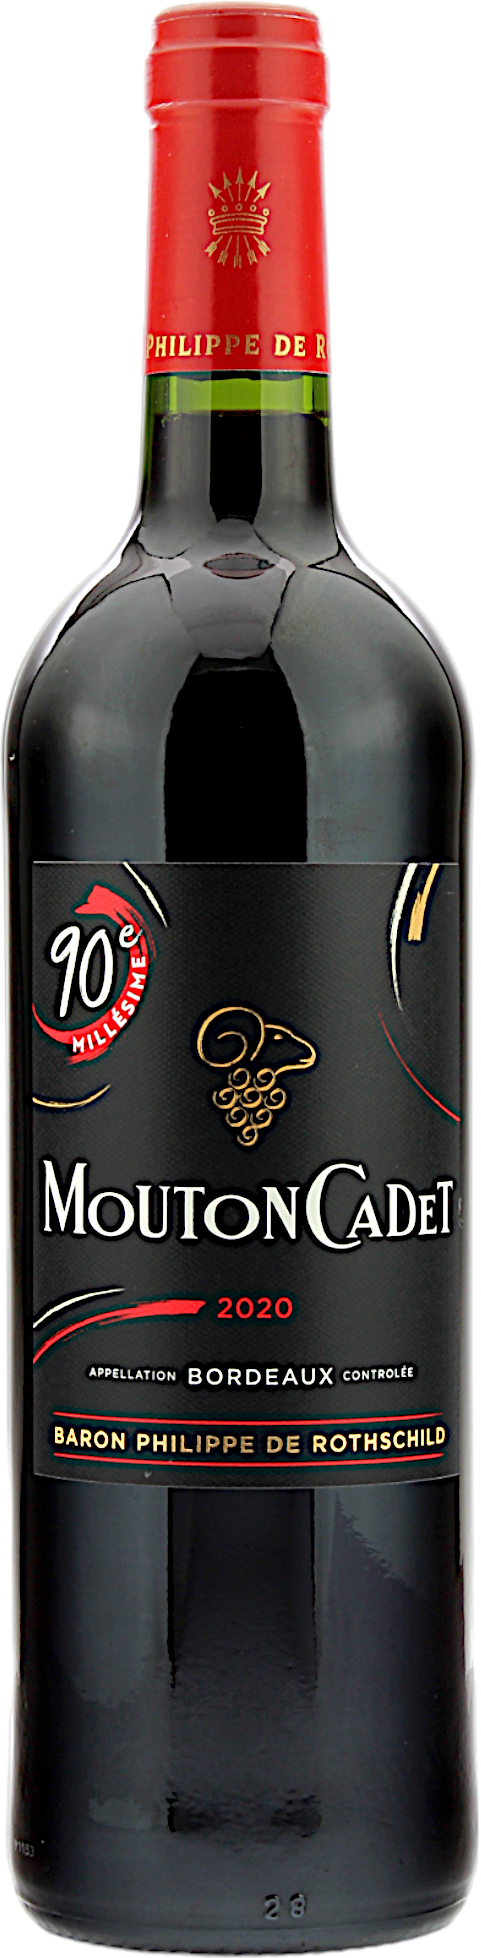 Baron Philippe de Rothschild Mouton Cadet Rouge Bordeaux 2020 14.0% 0,75l 